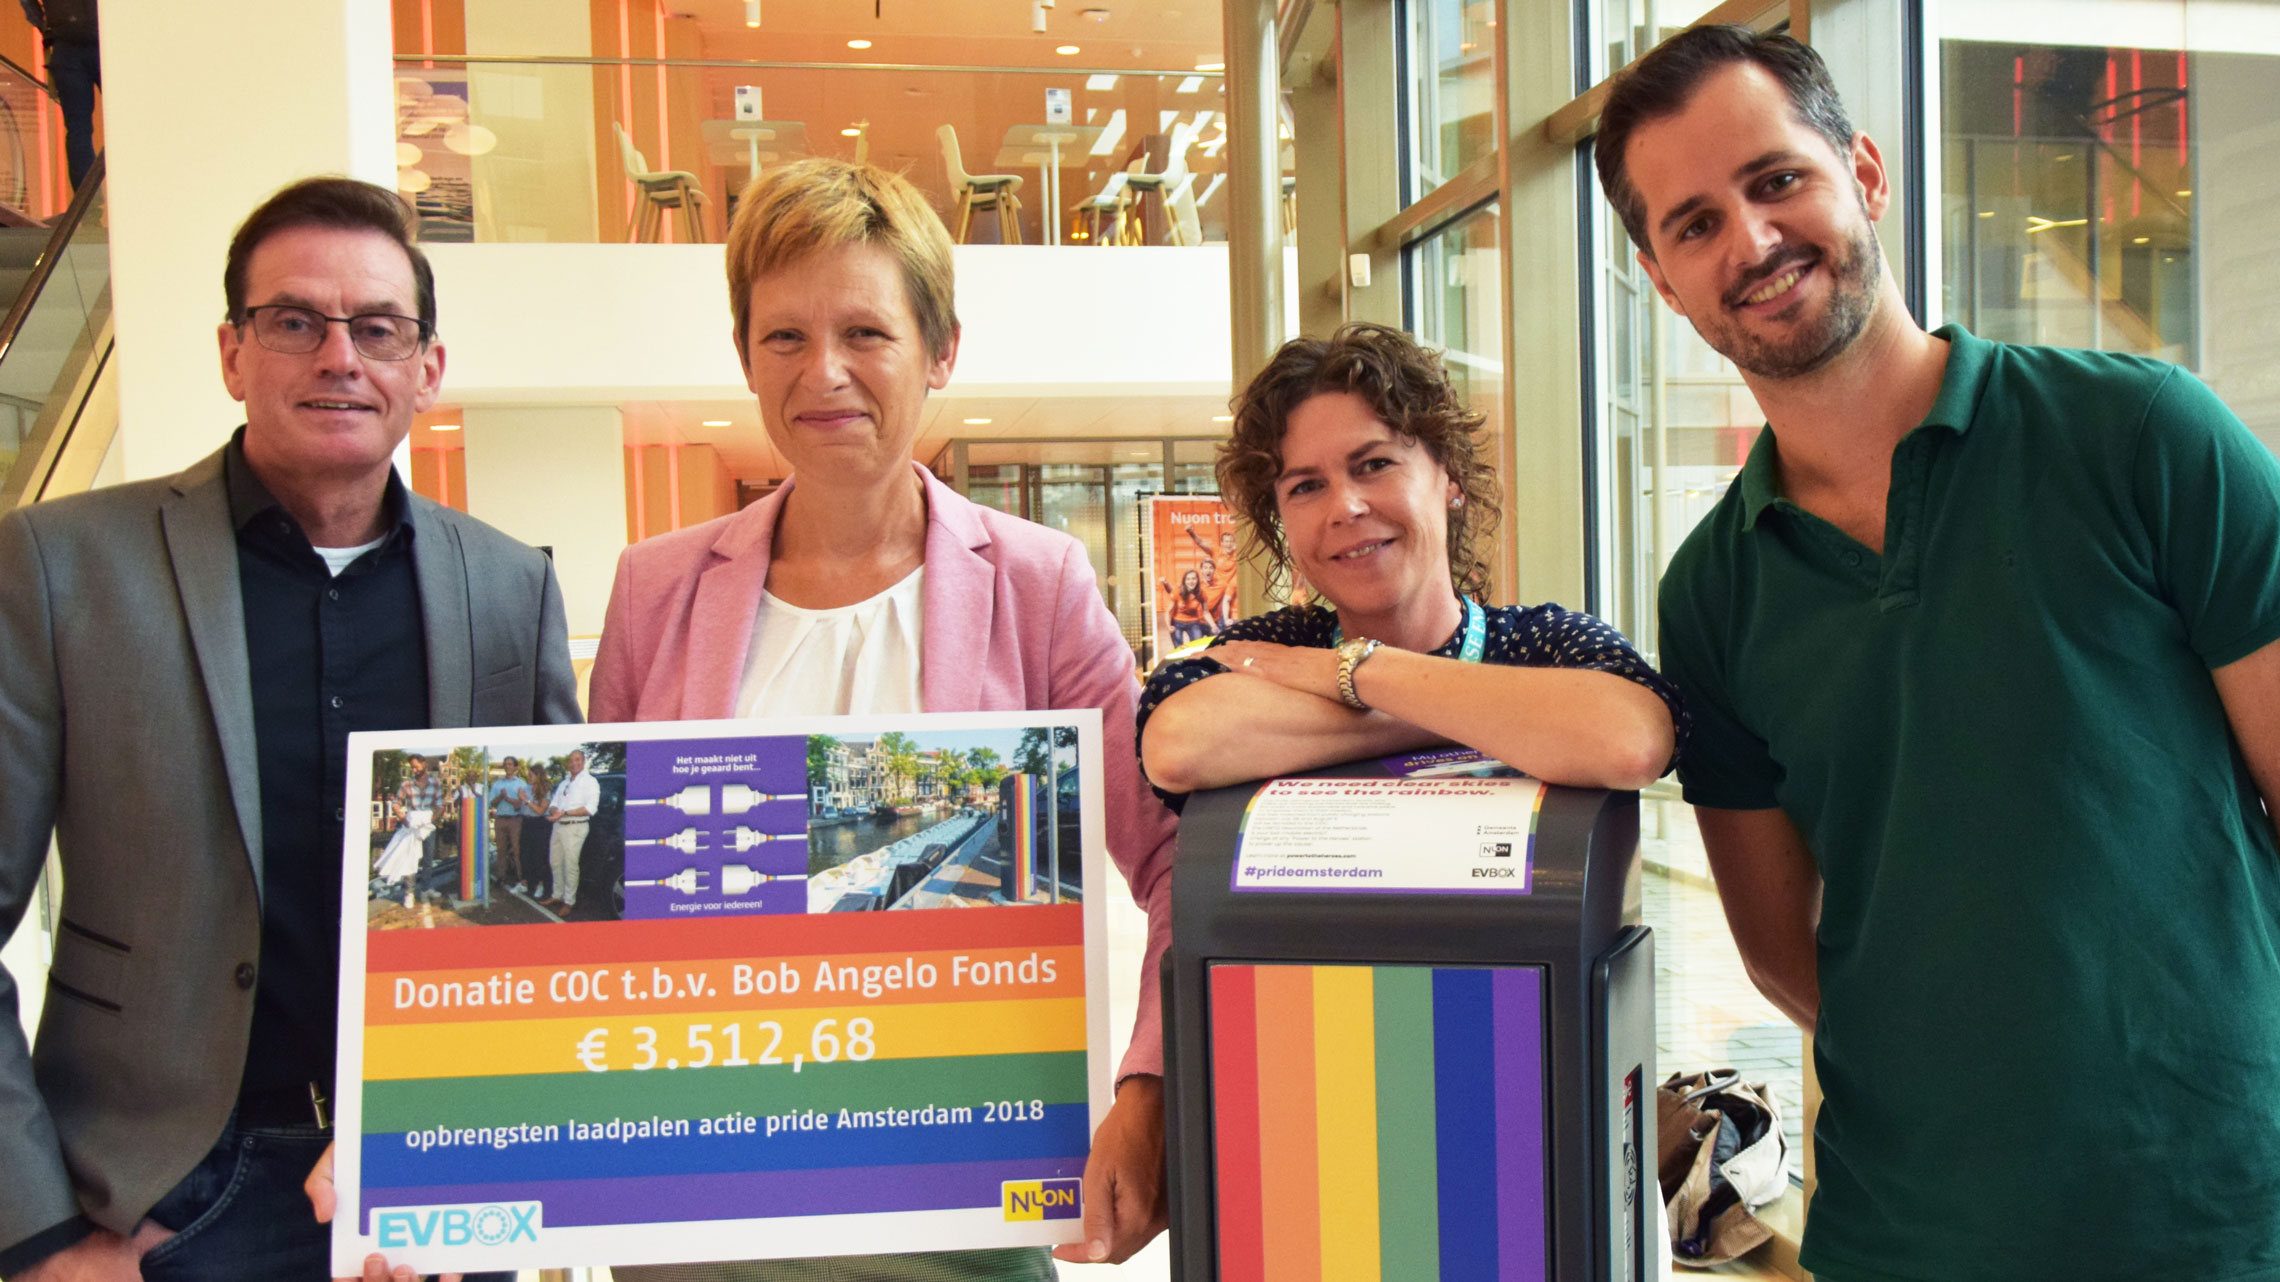 De overhandiging van de cheque aan COC-voorzitter Tanja Ineke. V.l.n.r.: Vinn de Jong (Nuon), Tanja Ineke (COC), Anne Wingelaar (Nuon) en Job Karstens (EVBox).